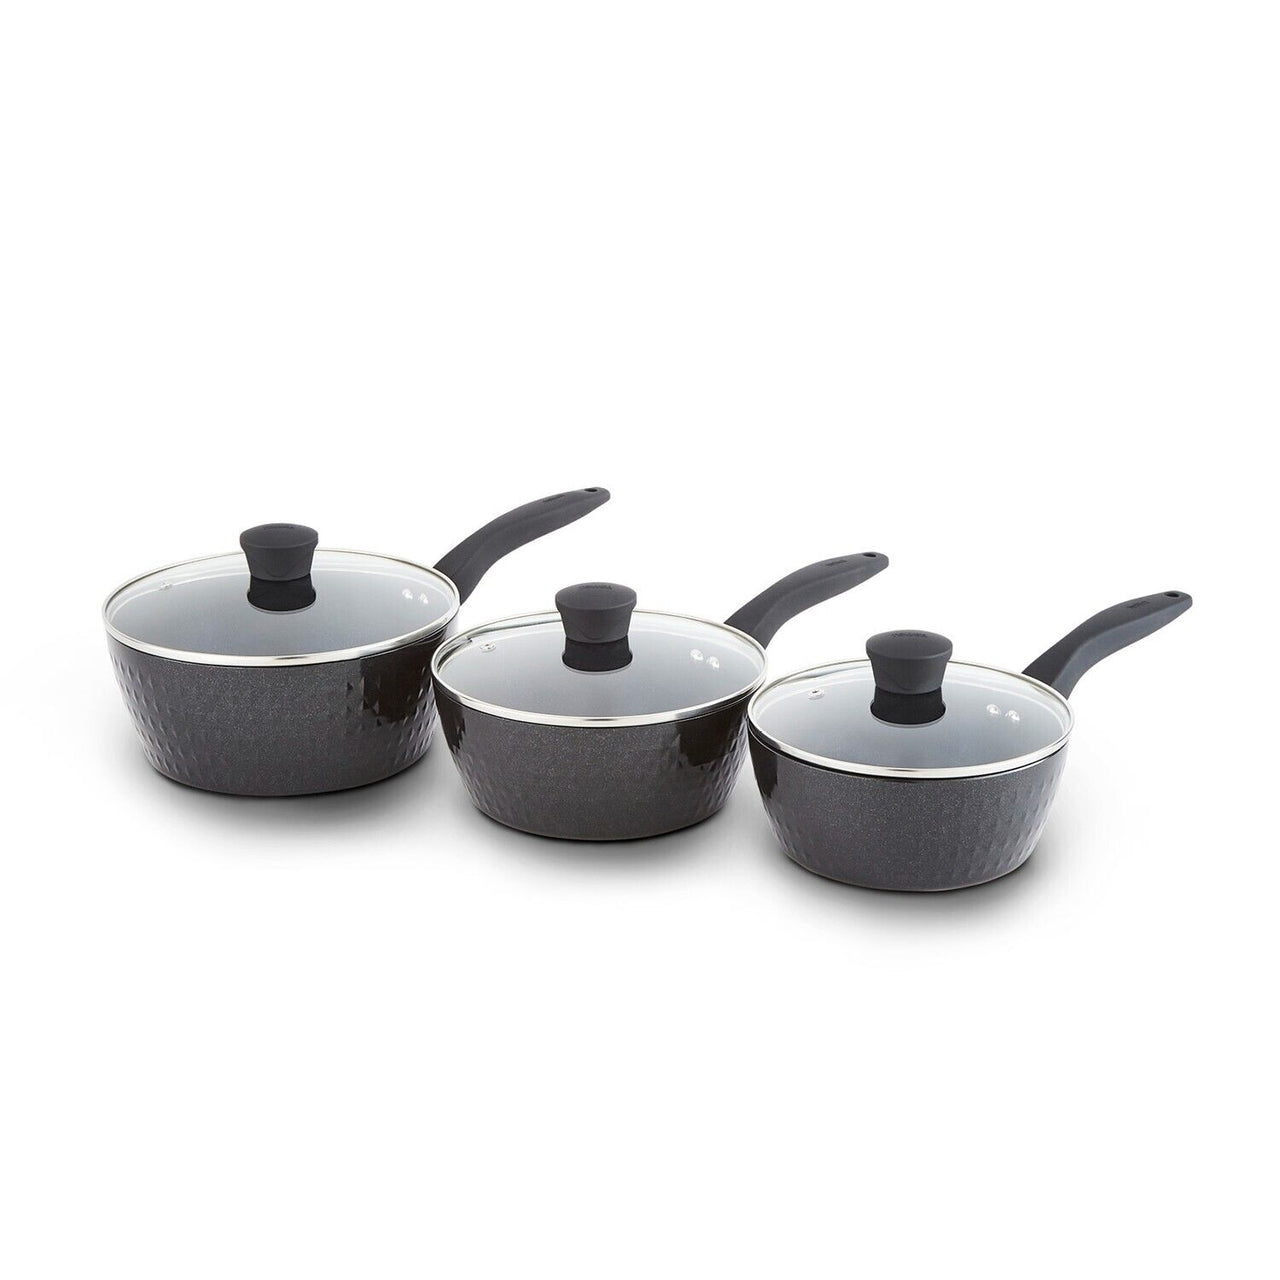 Tower Diamo 3 Piece Cookware Set of 3 Black Non Stick Saucepans T900131 Pan Set, 10 Year Guarantee